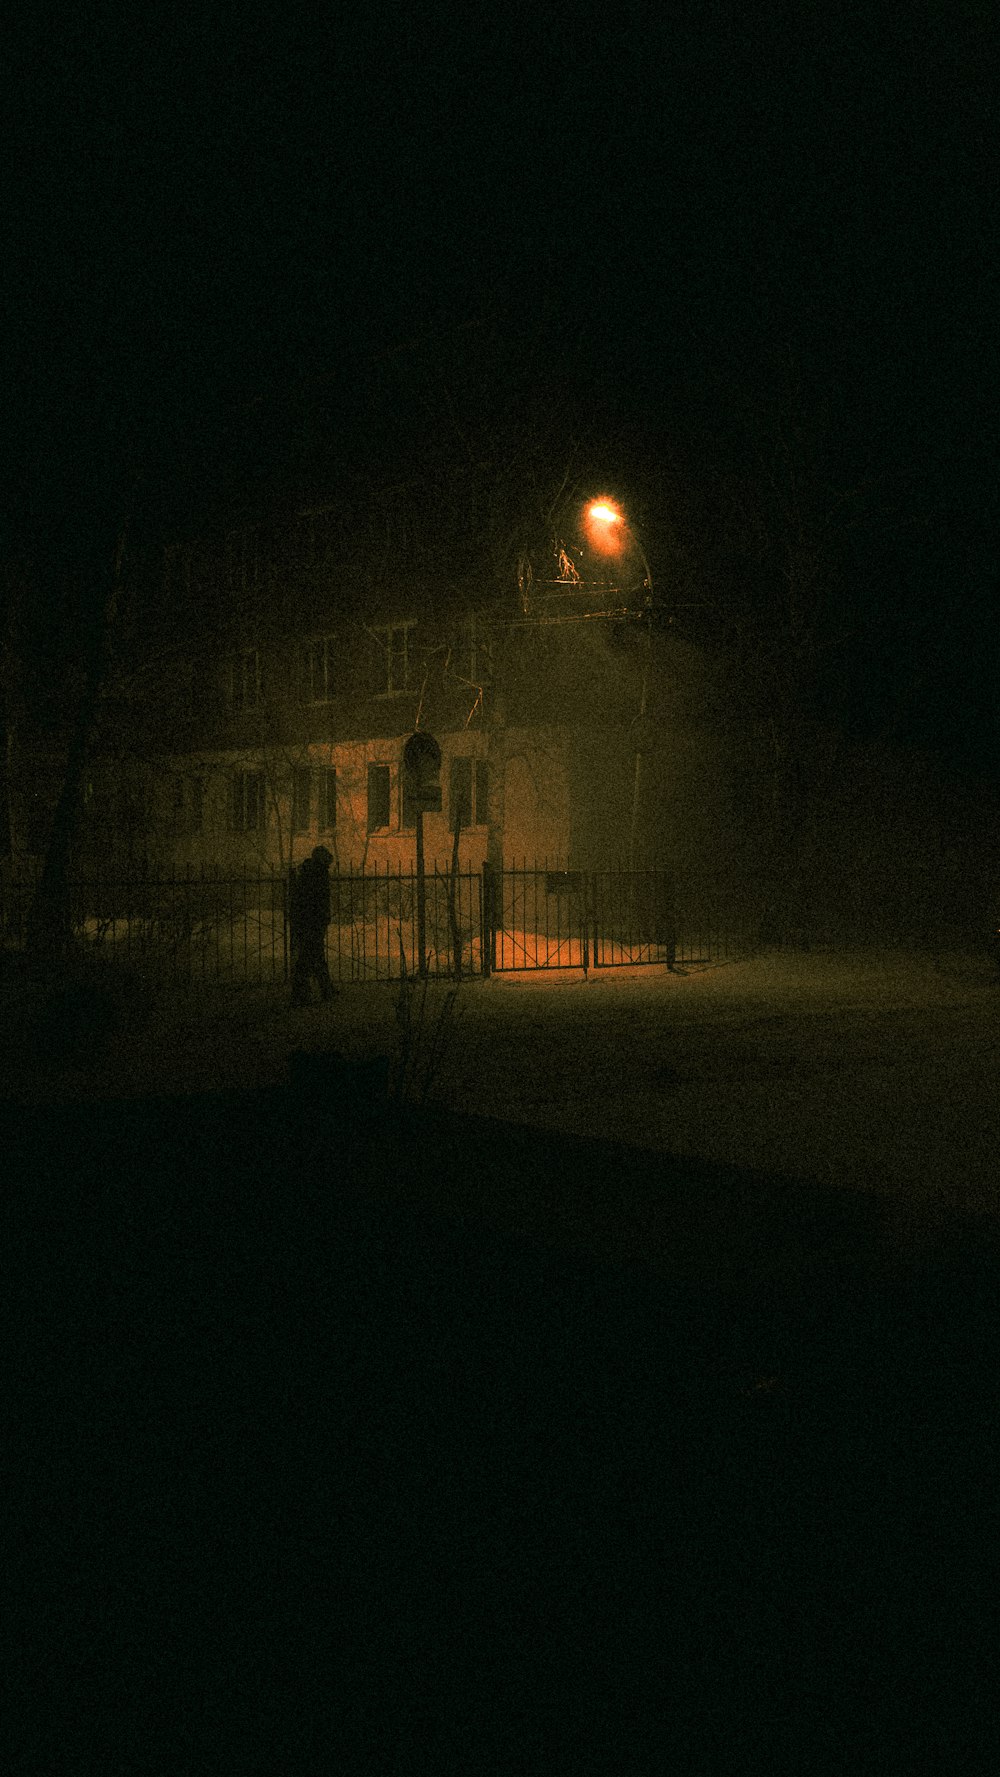 una persona parada frente a una casa por la noche